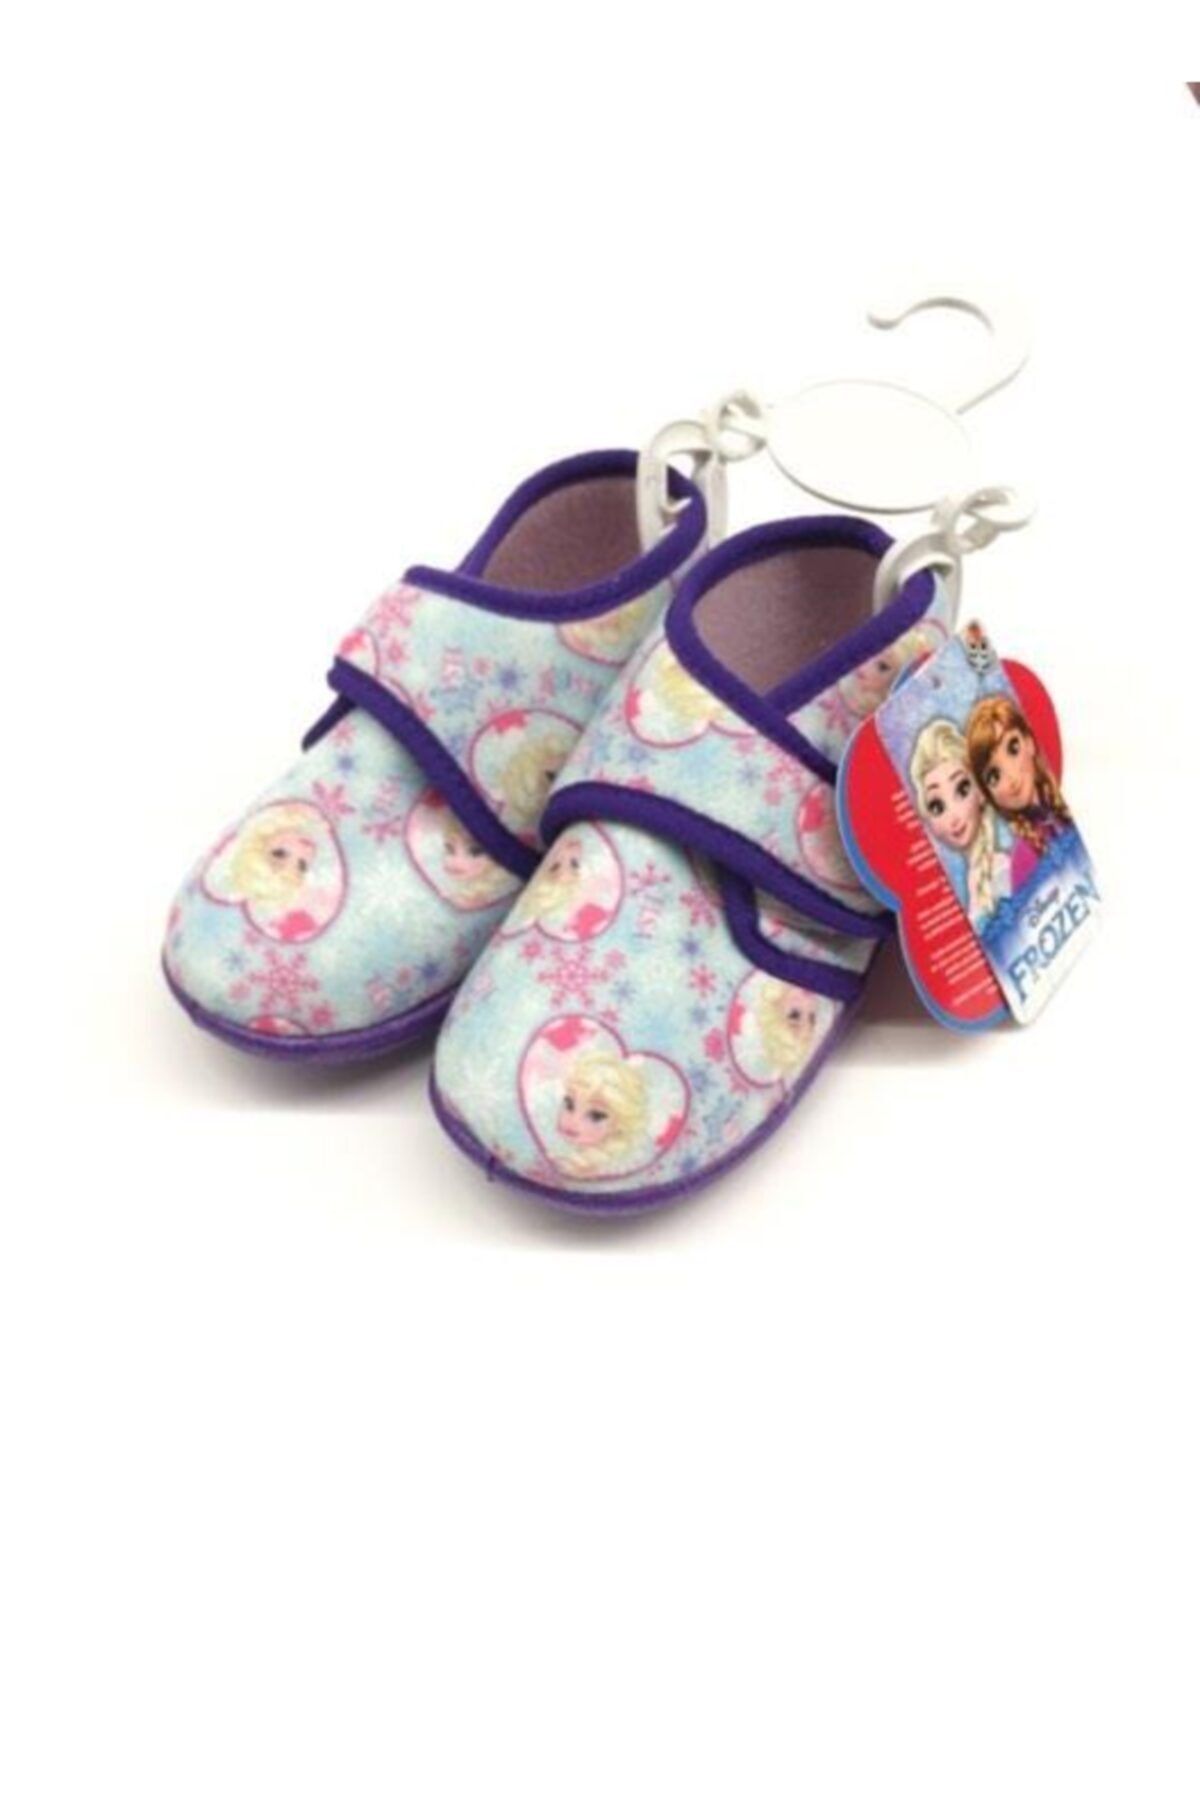 Hakan Çanta Frozen Lisanslı Panduf Çocuk Ayakkabısı 21 Numara